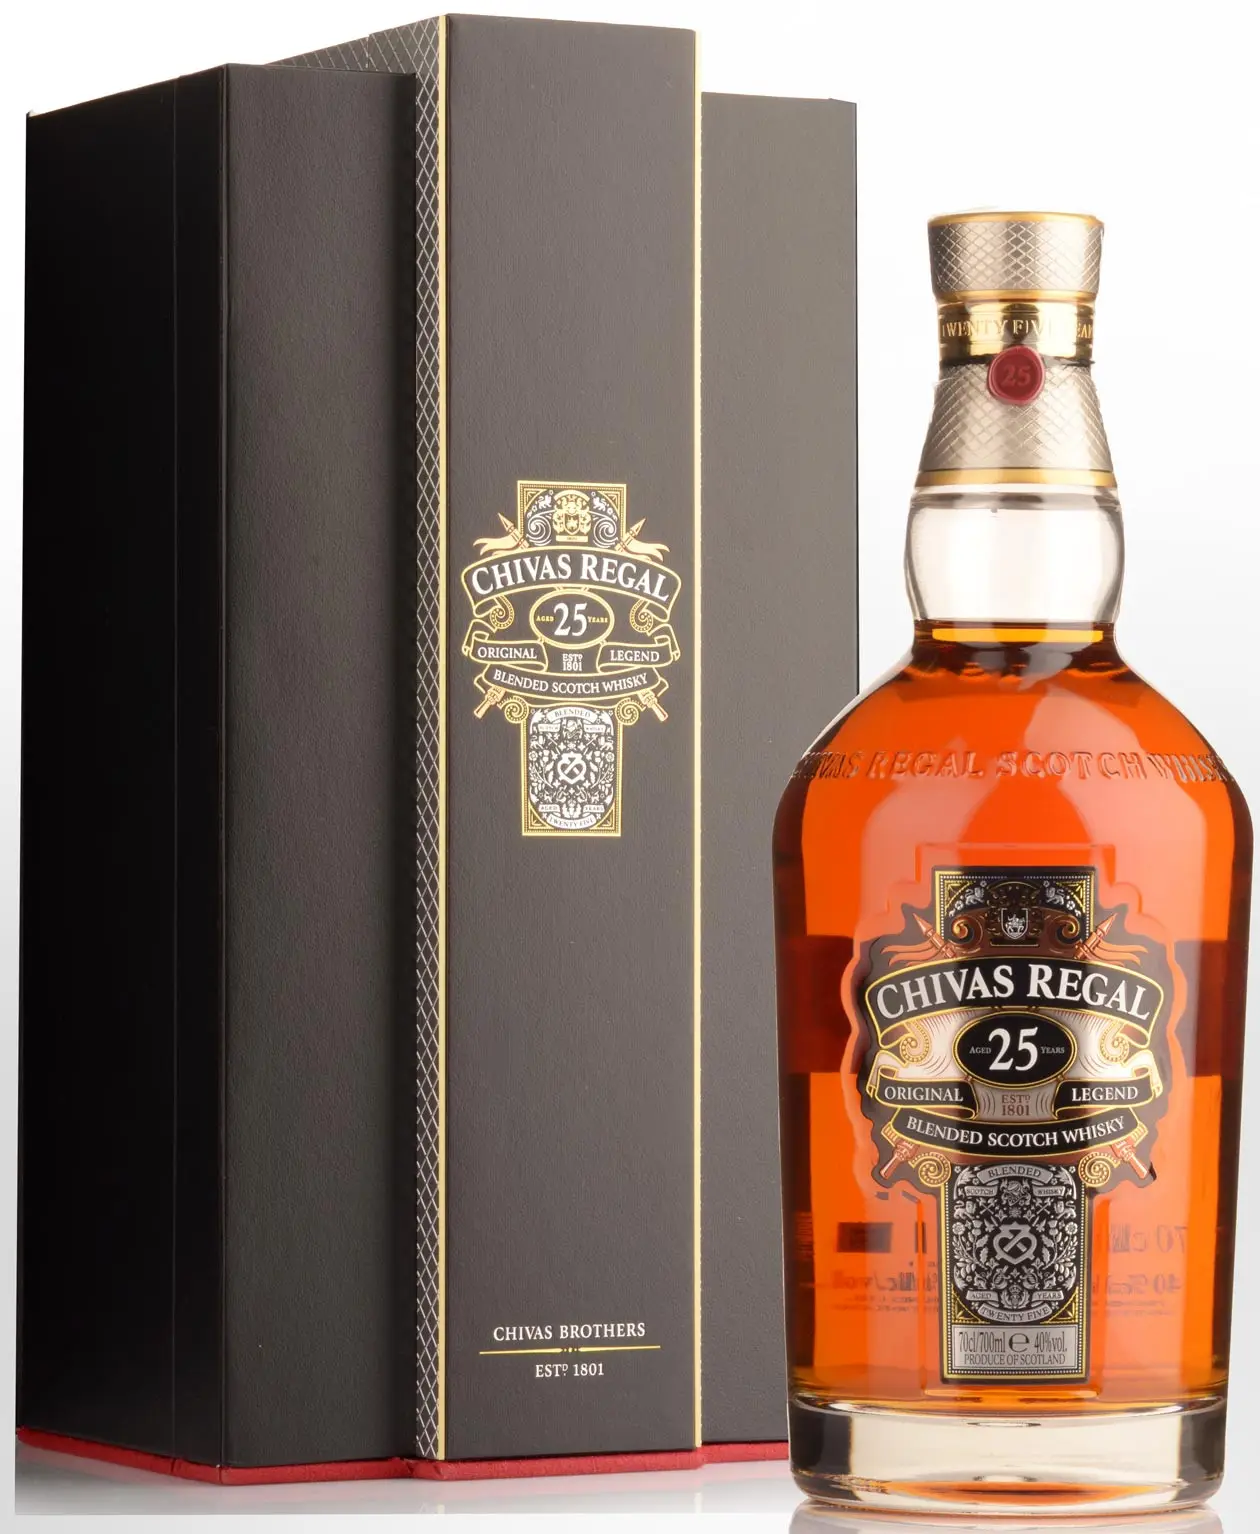 Chivas Regal 1l Scotch Whisky / Hennessy Cognac Special / Chivas Vorstelijk 18 Jaar Scotch Whisky